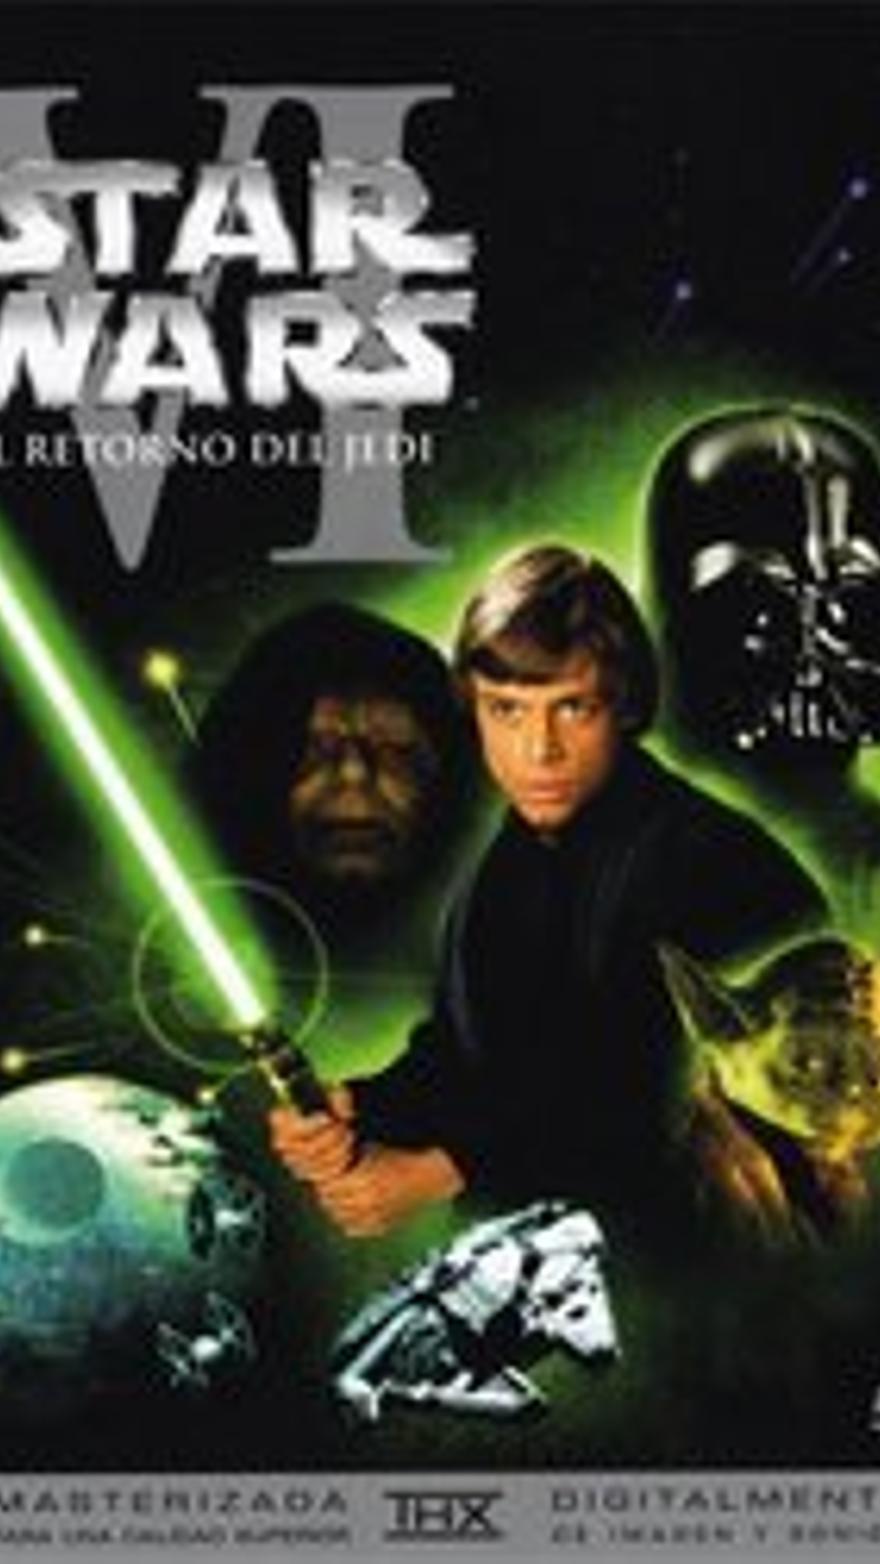 Star Wars: El retorno del Jedi